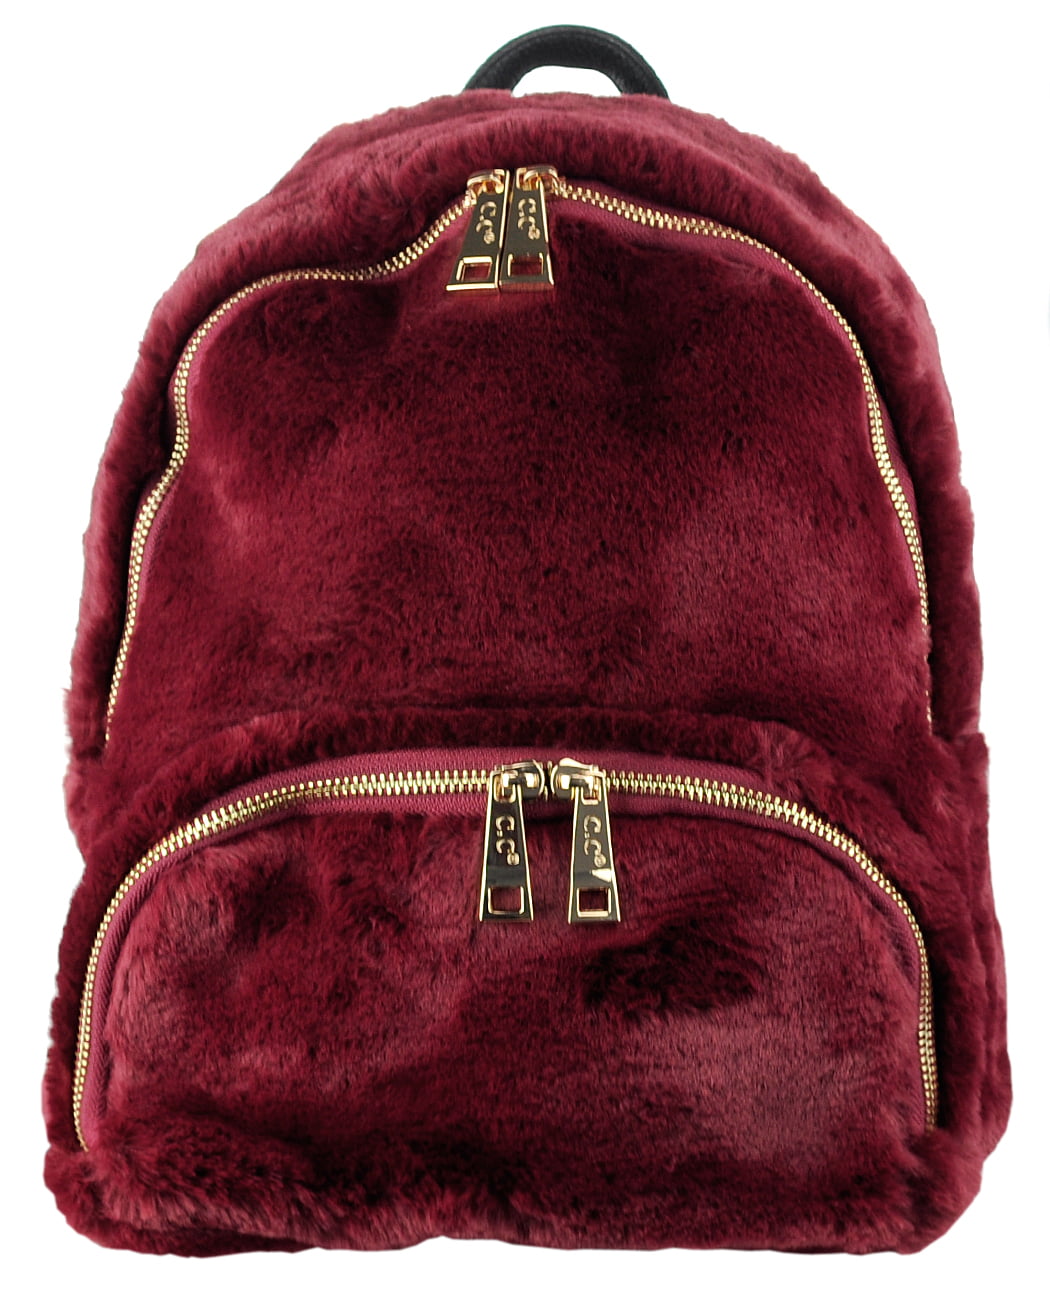 C.C Women's Faux Fur Fuzzy Backpack Schoolbag Shoulder Bag Purse ...